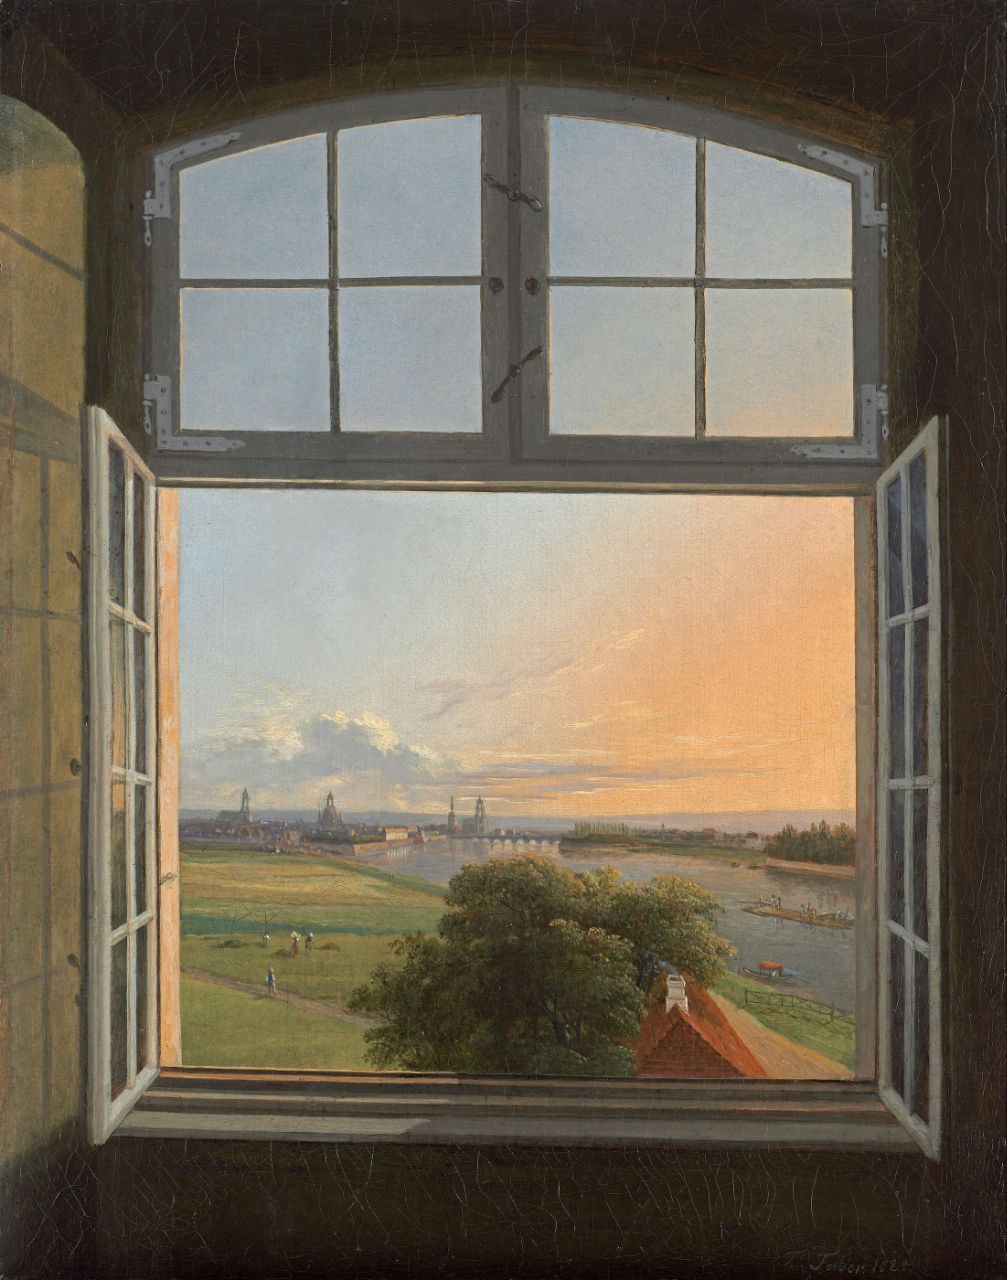 Вид на Дрезден. Трауготт Фабер, детали картины, 1824.